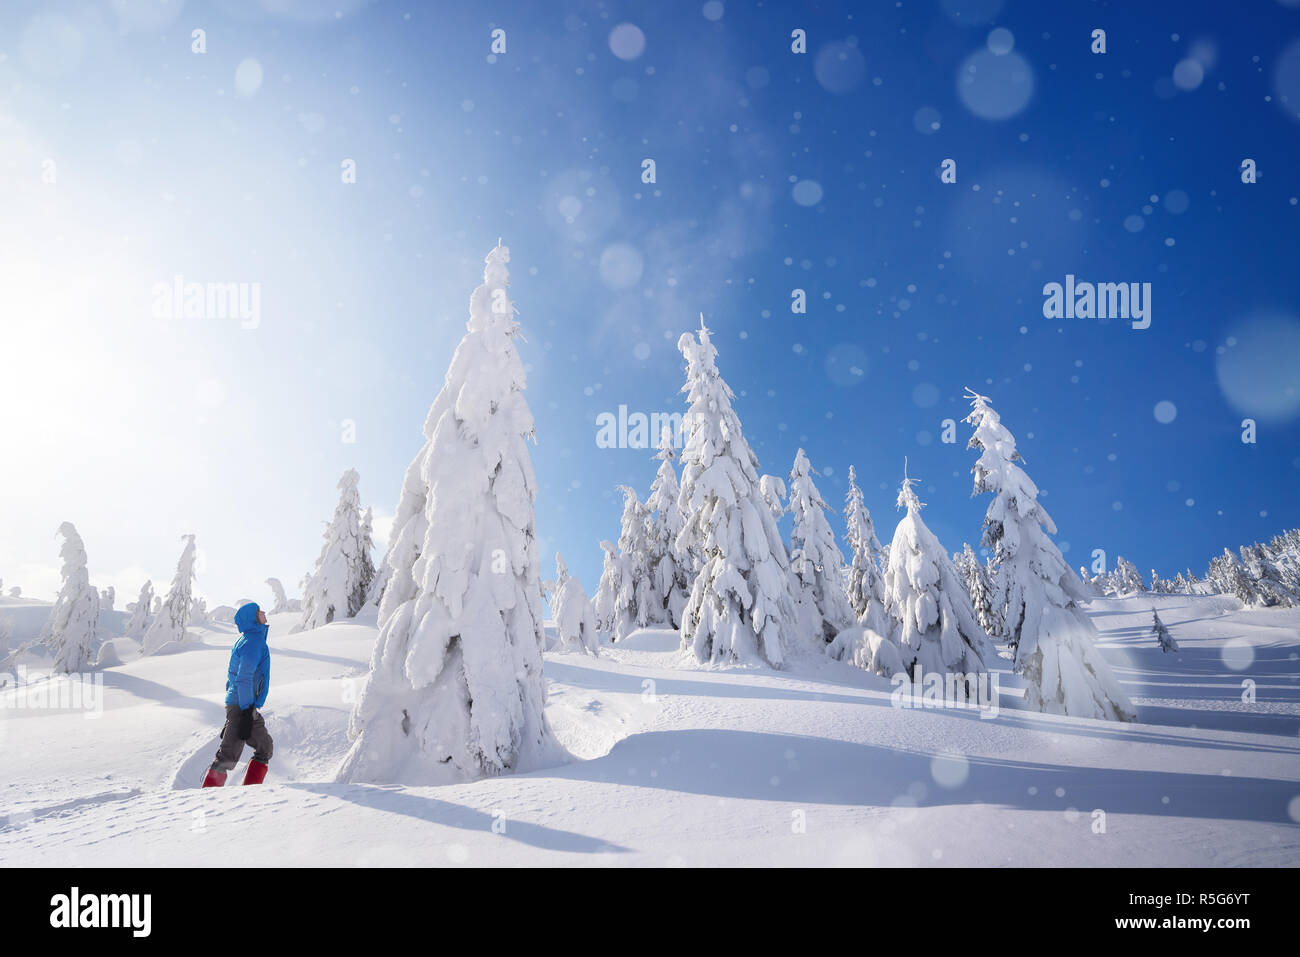 Incredibile avventura invernale nelle foreste di montagna. Il ragazzo si erge in un cumulo di neve e guarda ad una grande coperta di neve abete. Tempo soleggiato con nevicata Foto Stock